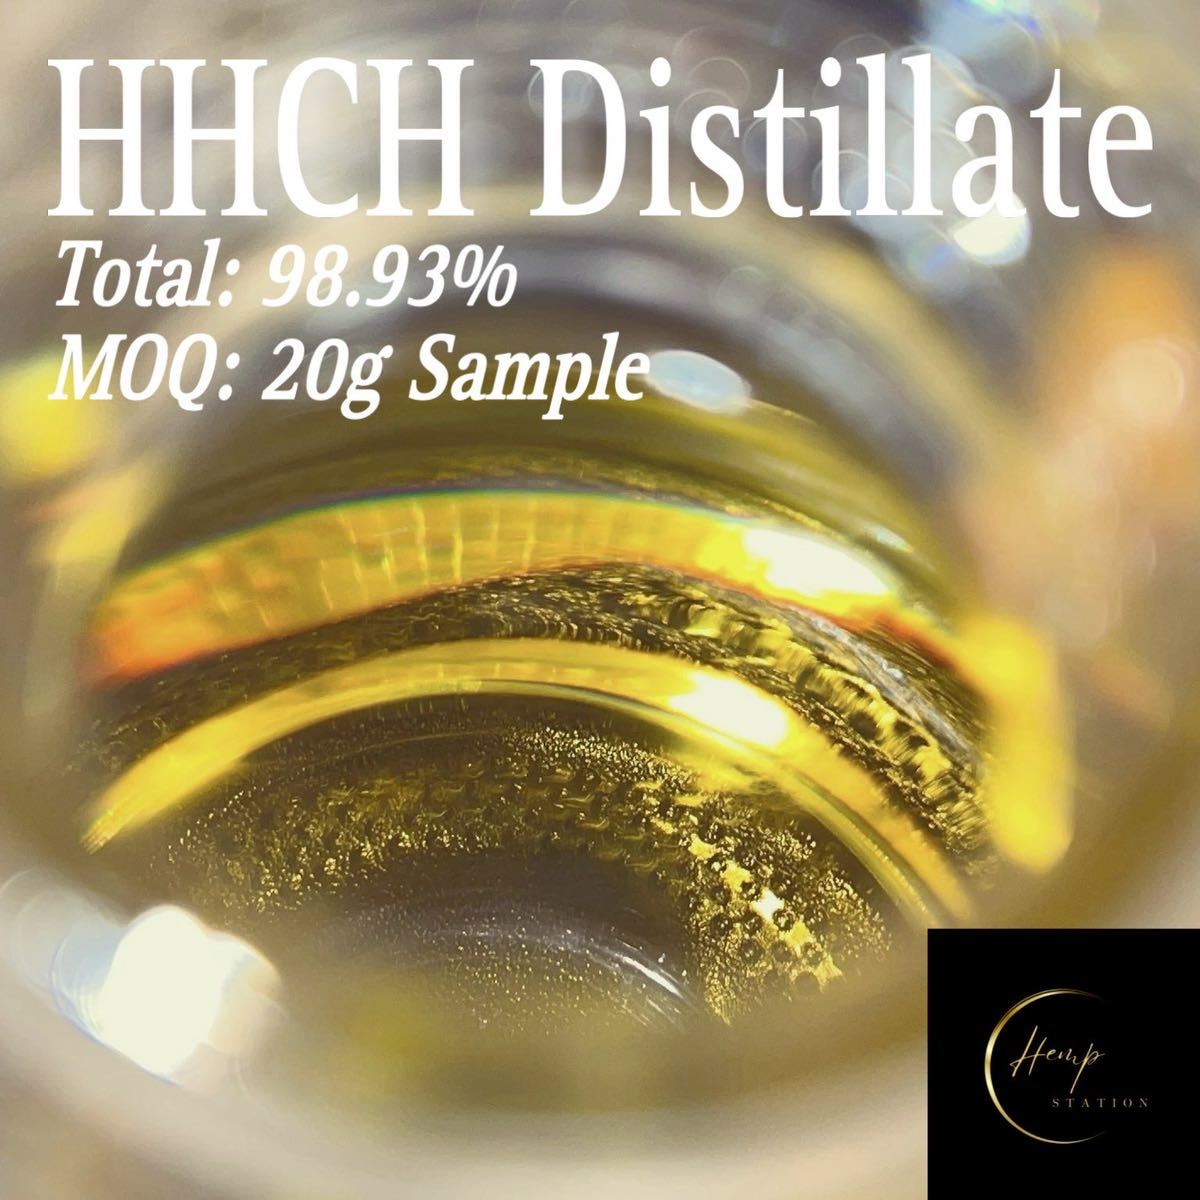 HHCH Distillate 98.93% HHCH原料 20g